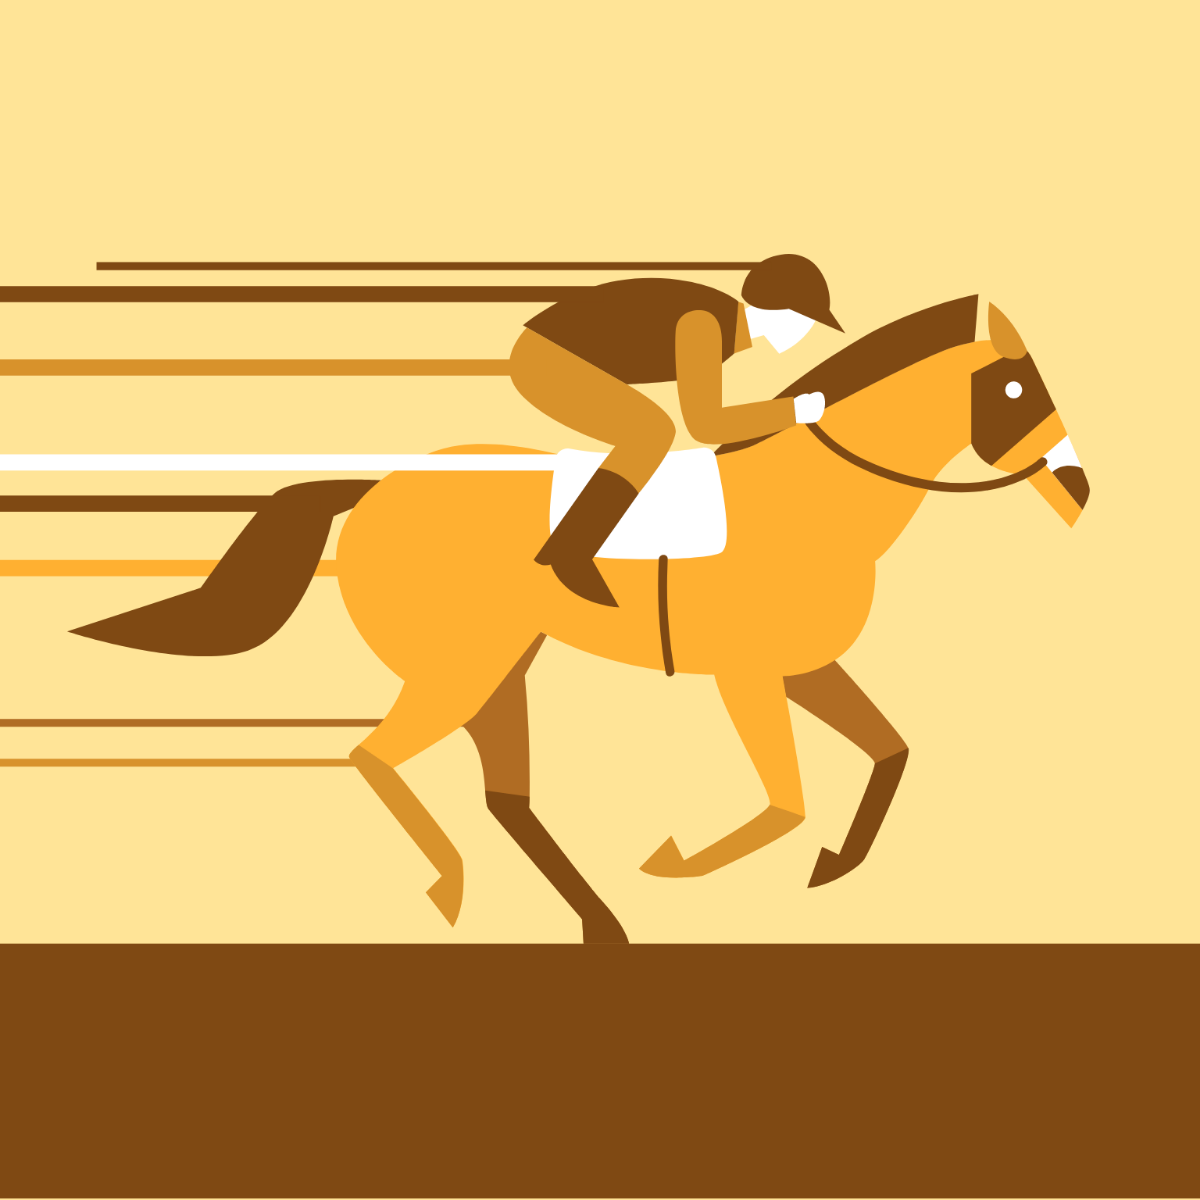 Horse Race Design Template